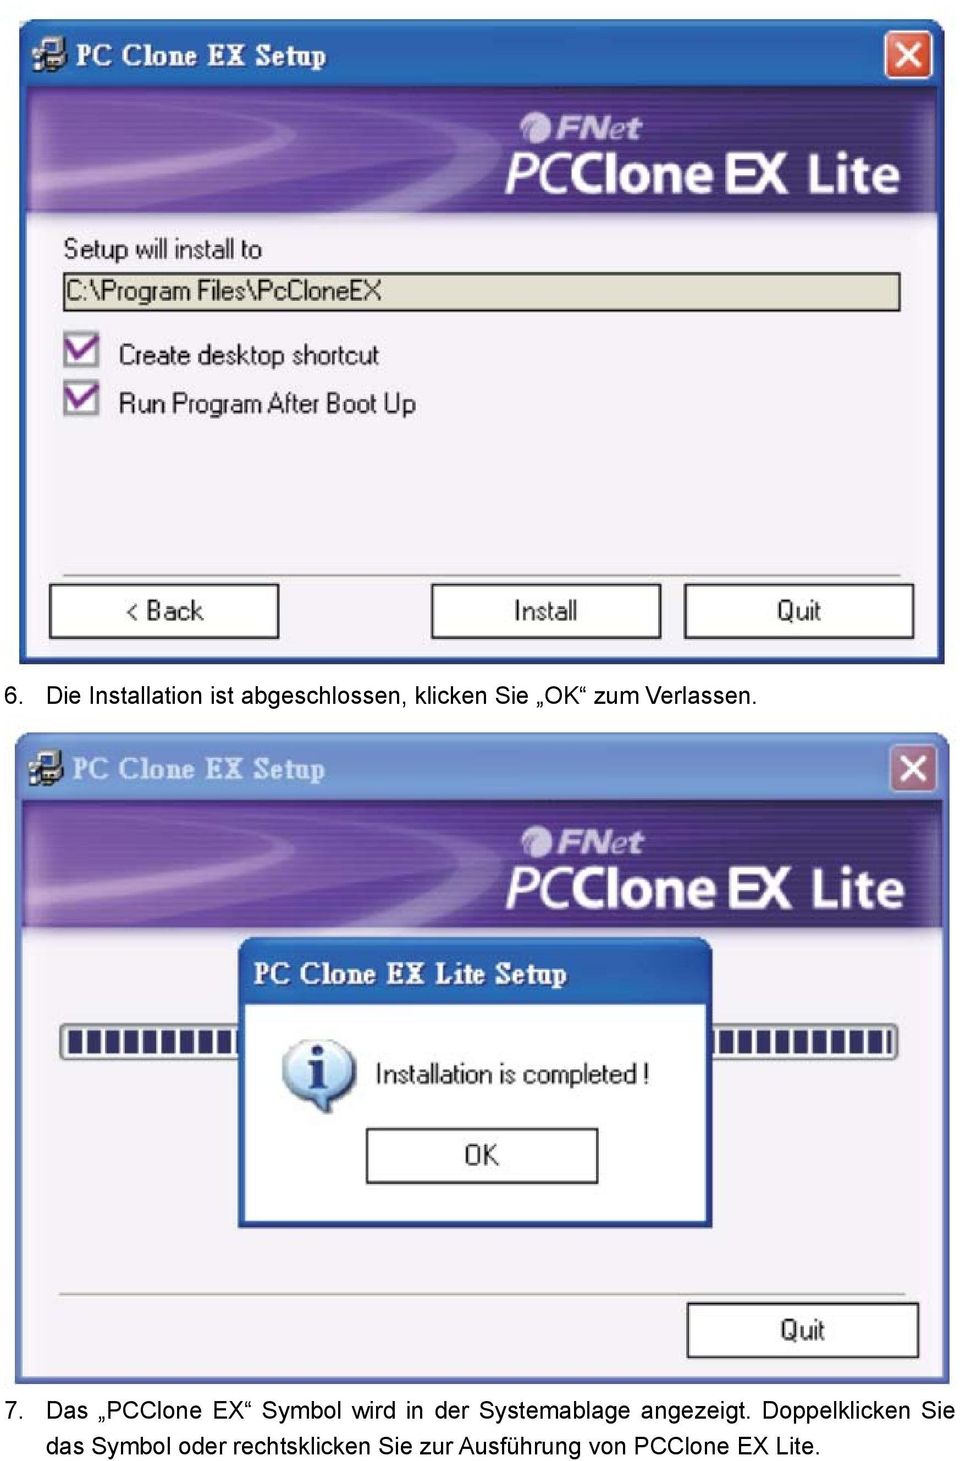 Das PCClone EX Symbol wird in der Systemablage